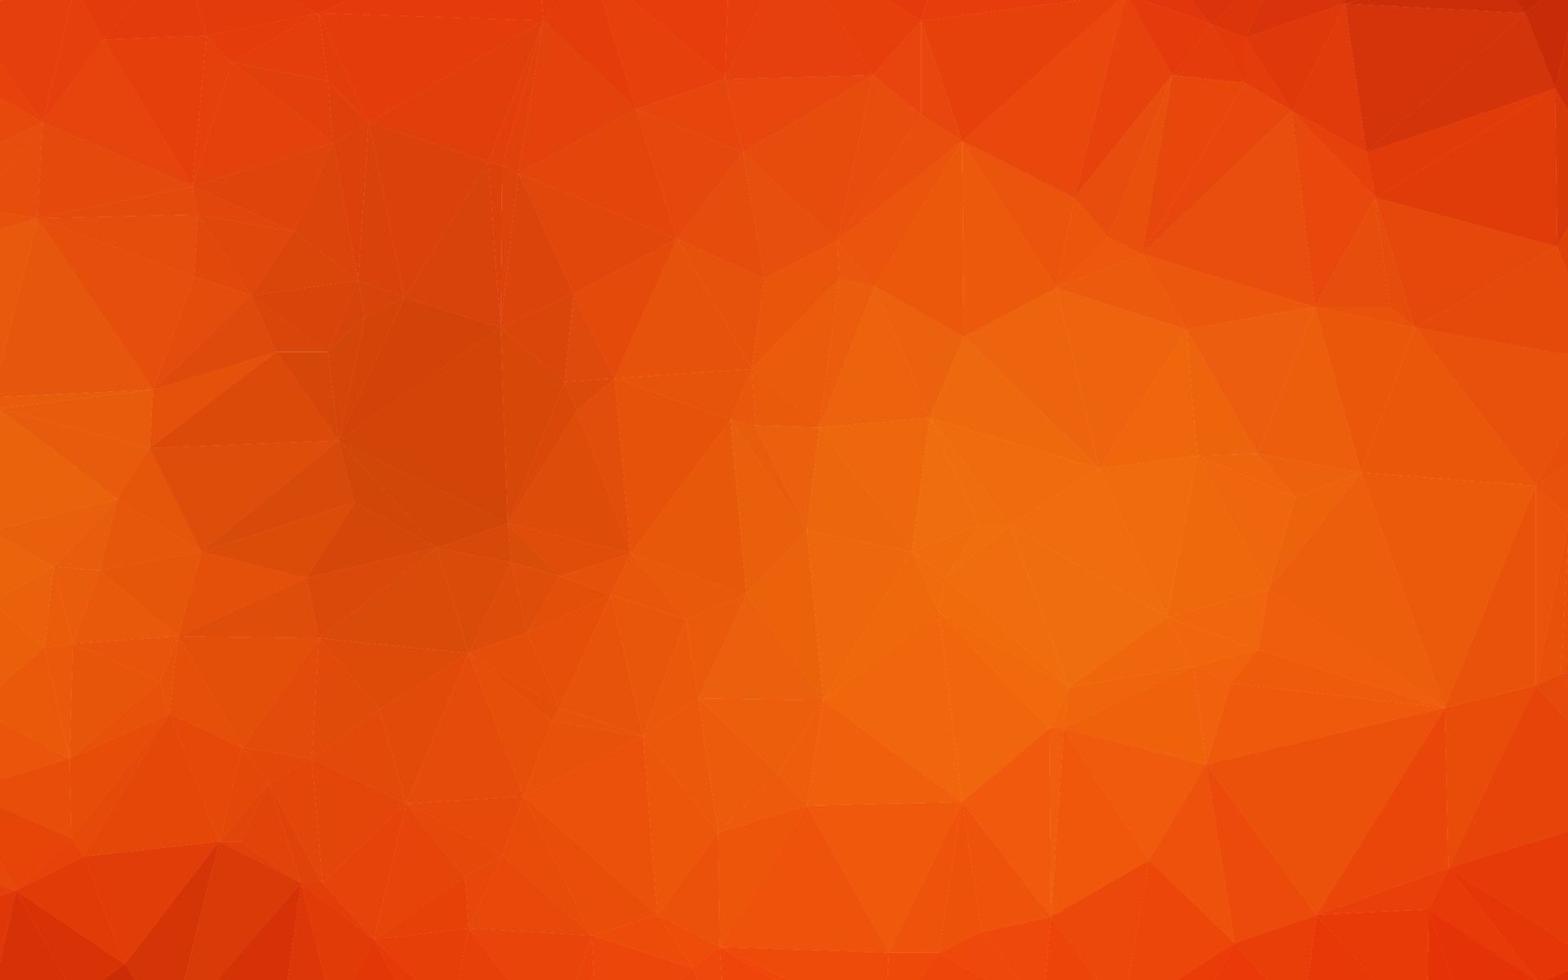 poligonale vettoriale arancione chiaro.